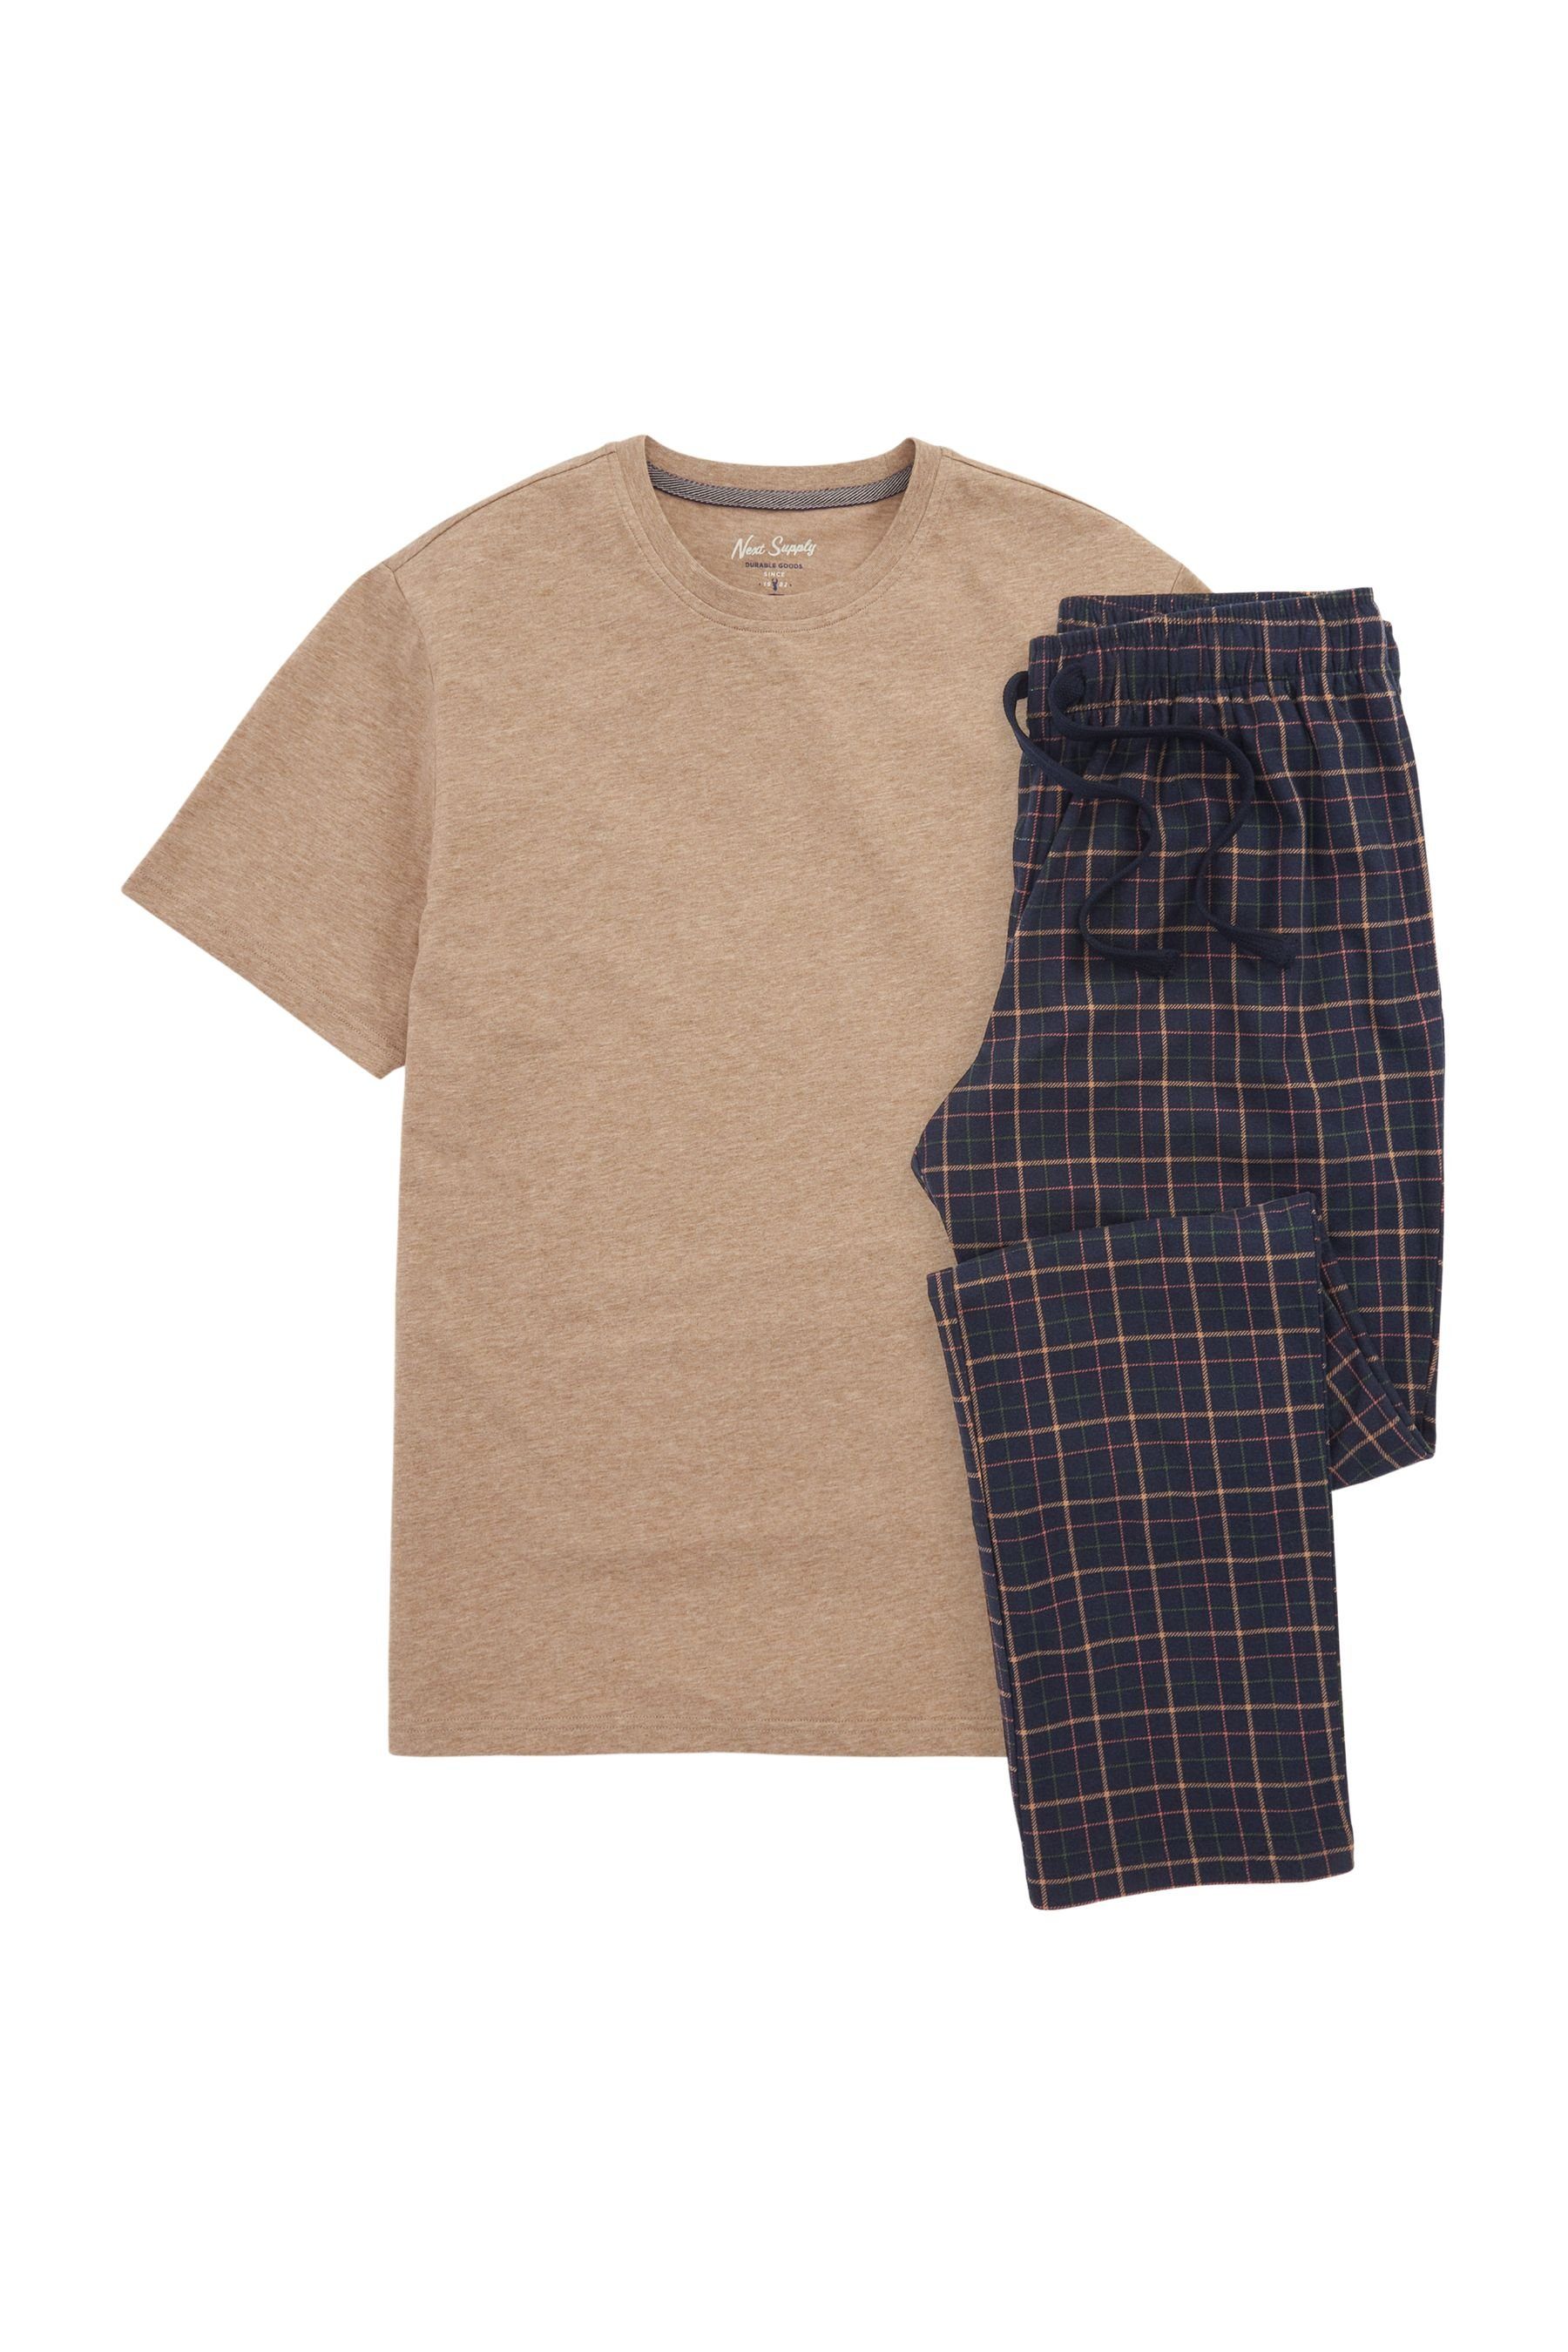 Next Pyjama Blue tlg) Check Schlafanzug Motionflex (2 Tan/Navy Bequemer